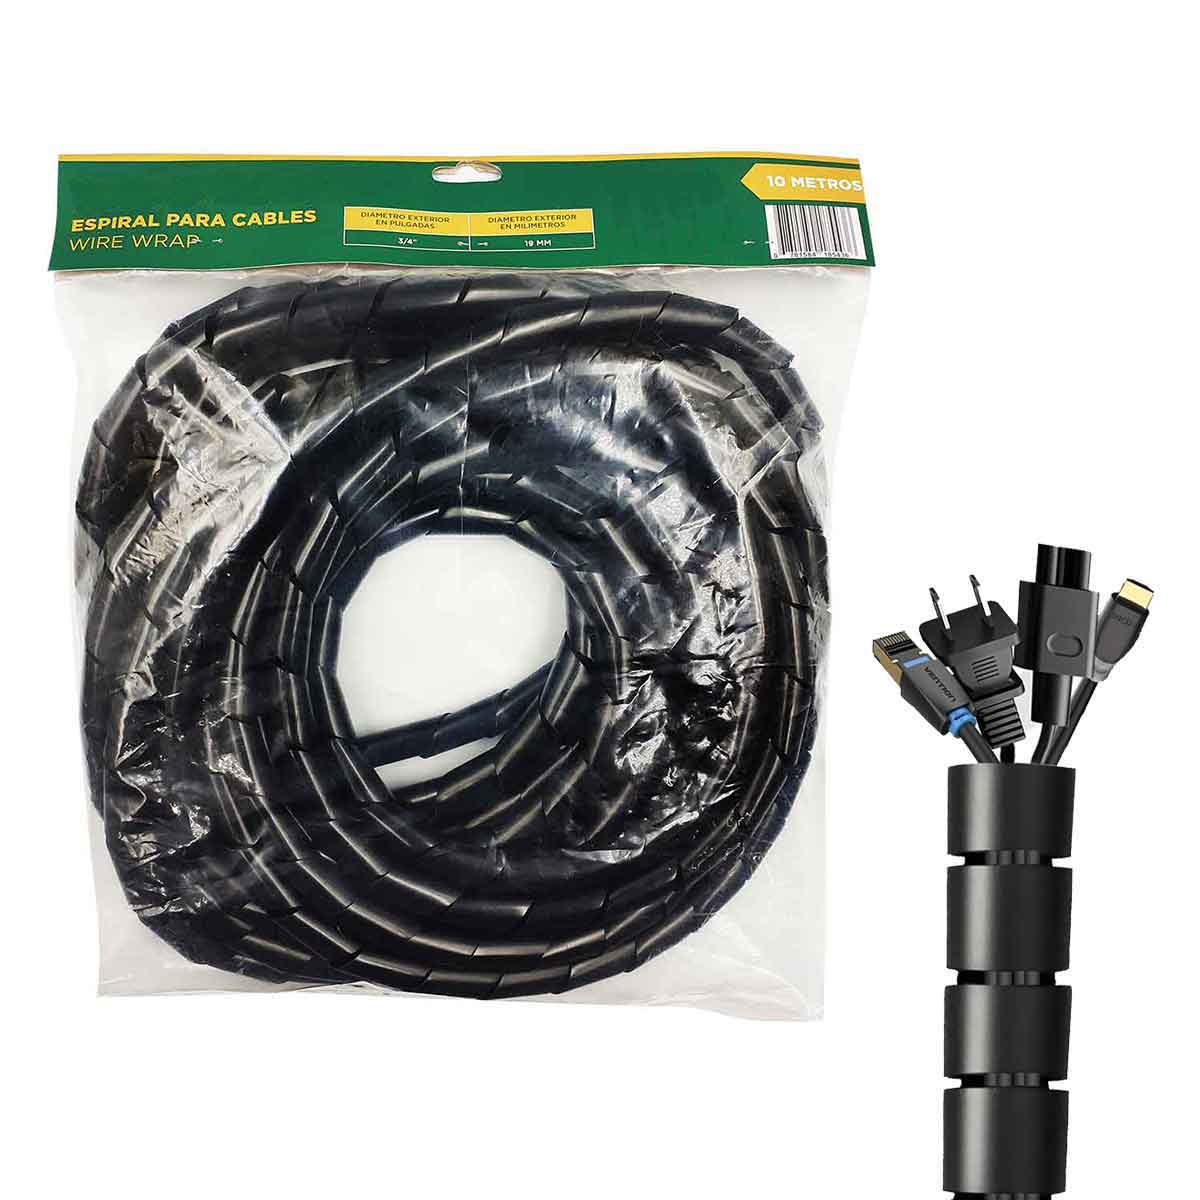 Tubo organizador de cables, tipo espiral, negro Steren